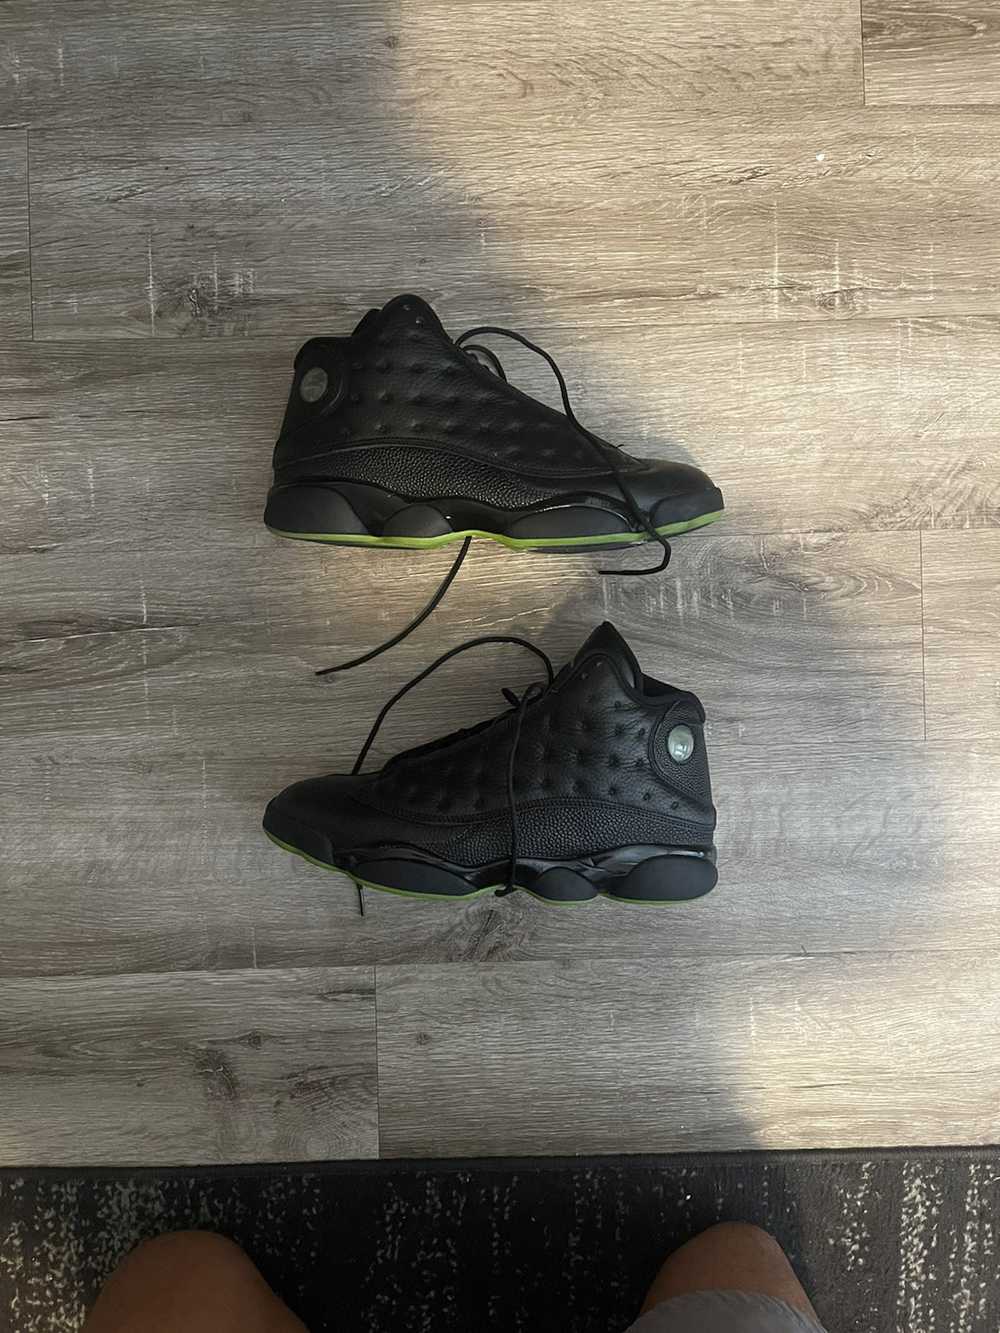 Jordan Brand × Nike Air Jordan 13 Altitude Green … - image 1